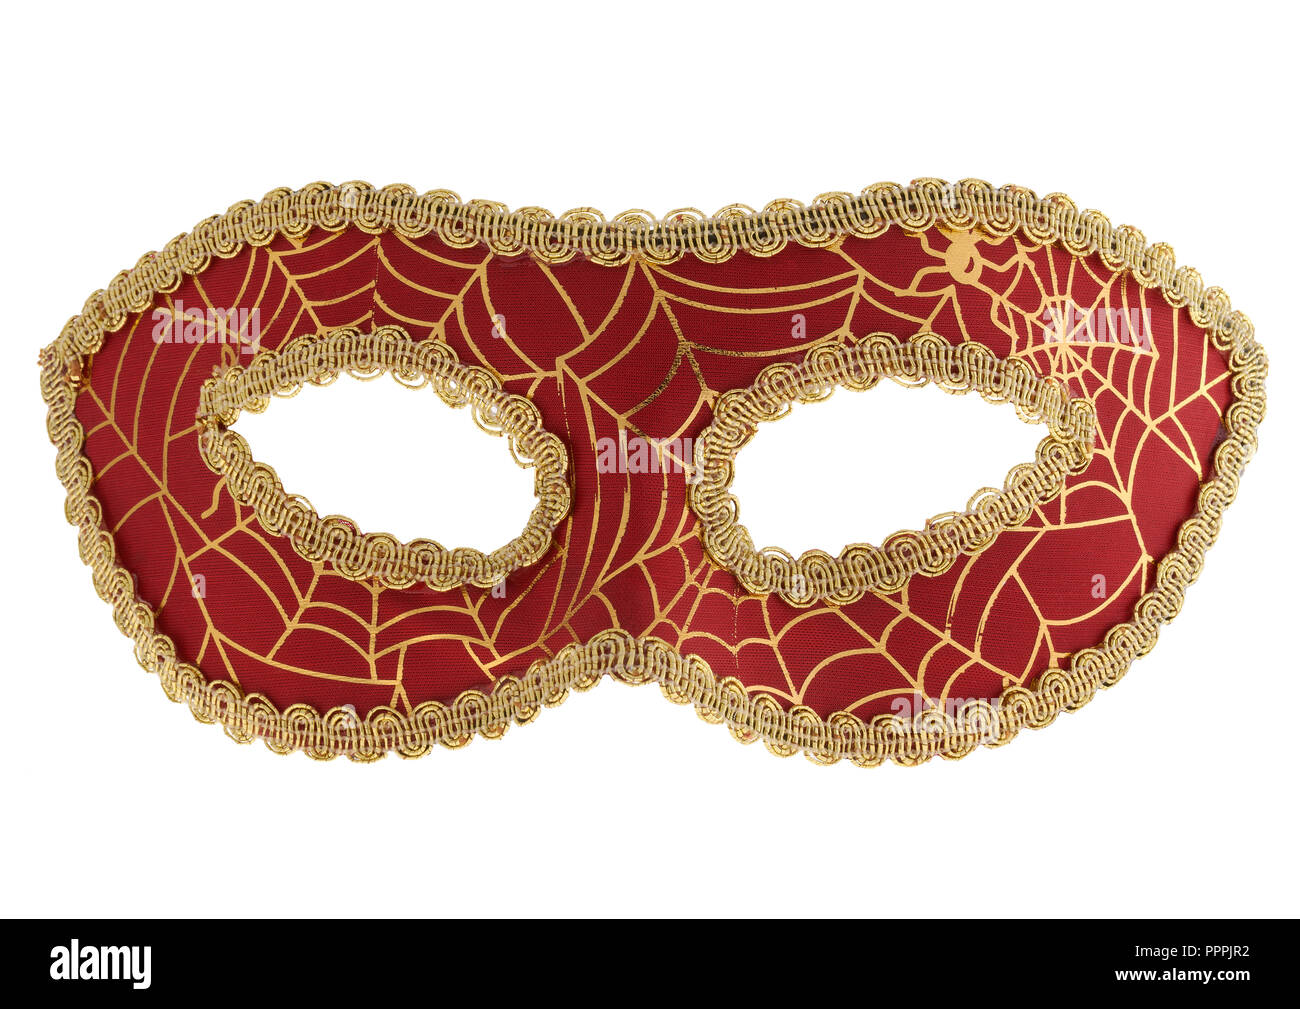 Masquerade mask on white background Stock Photo